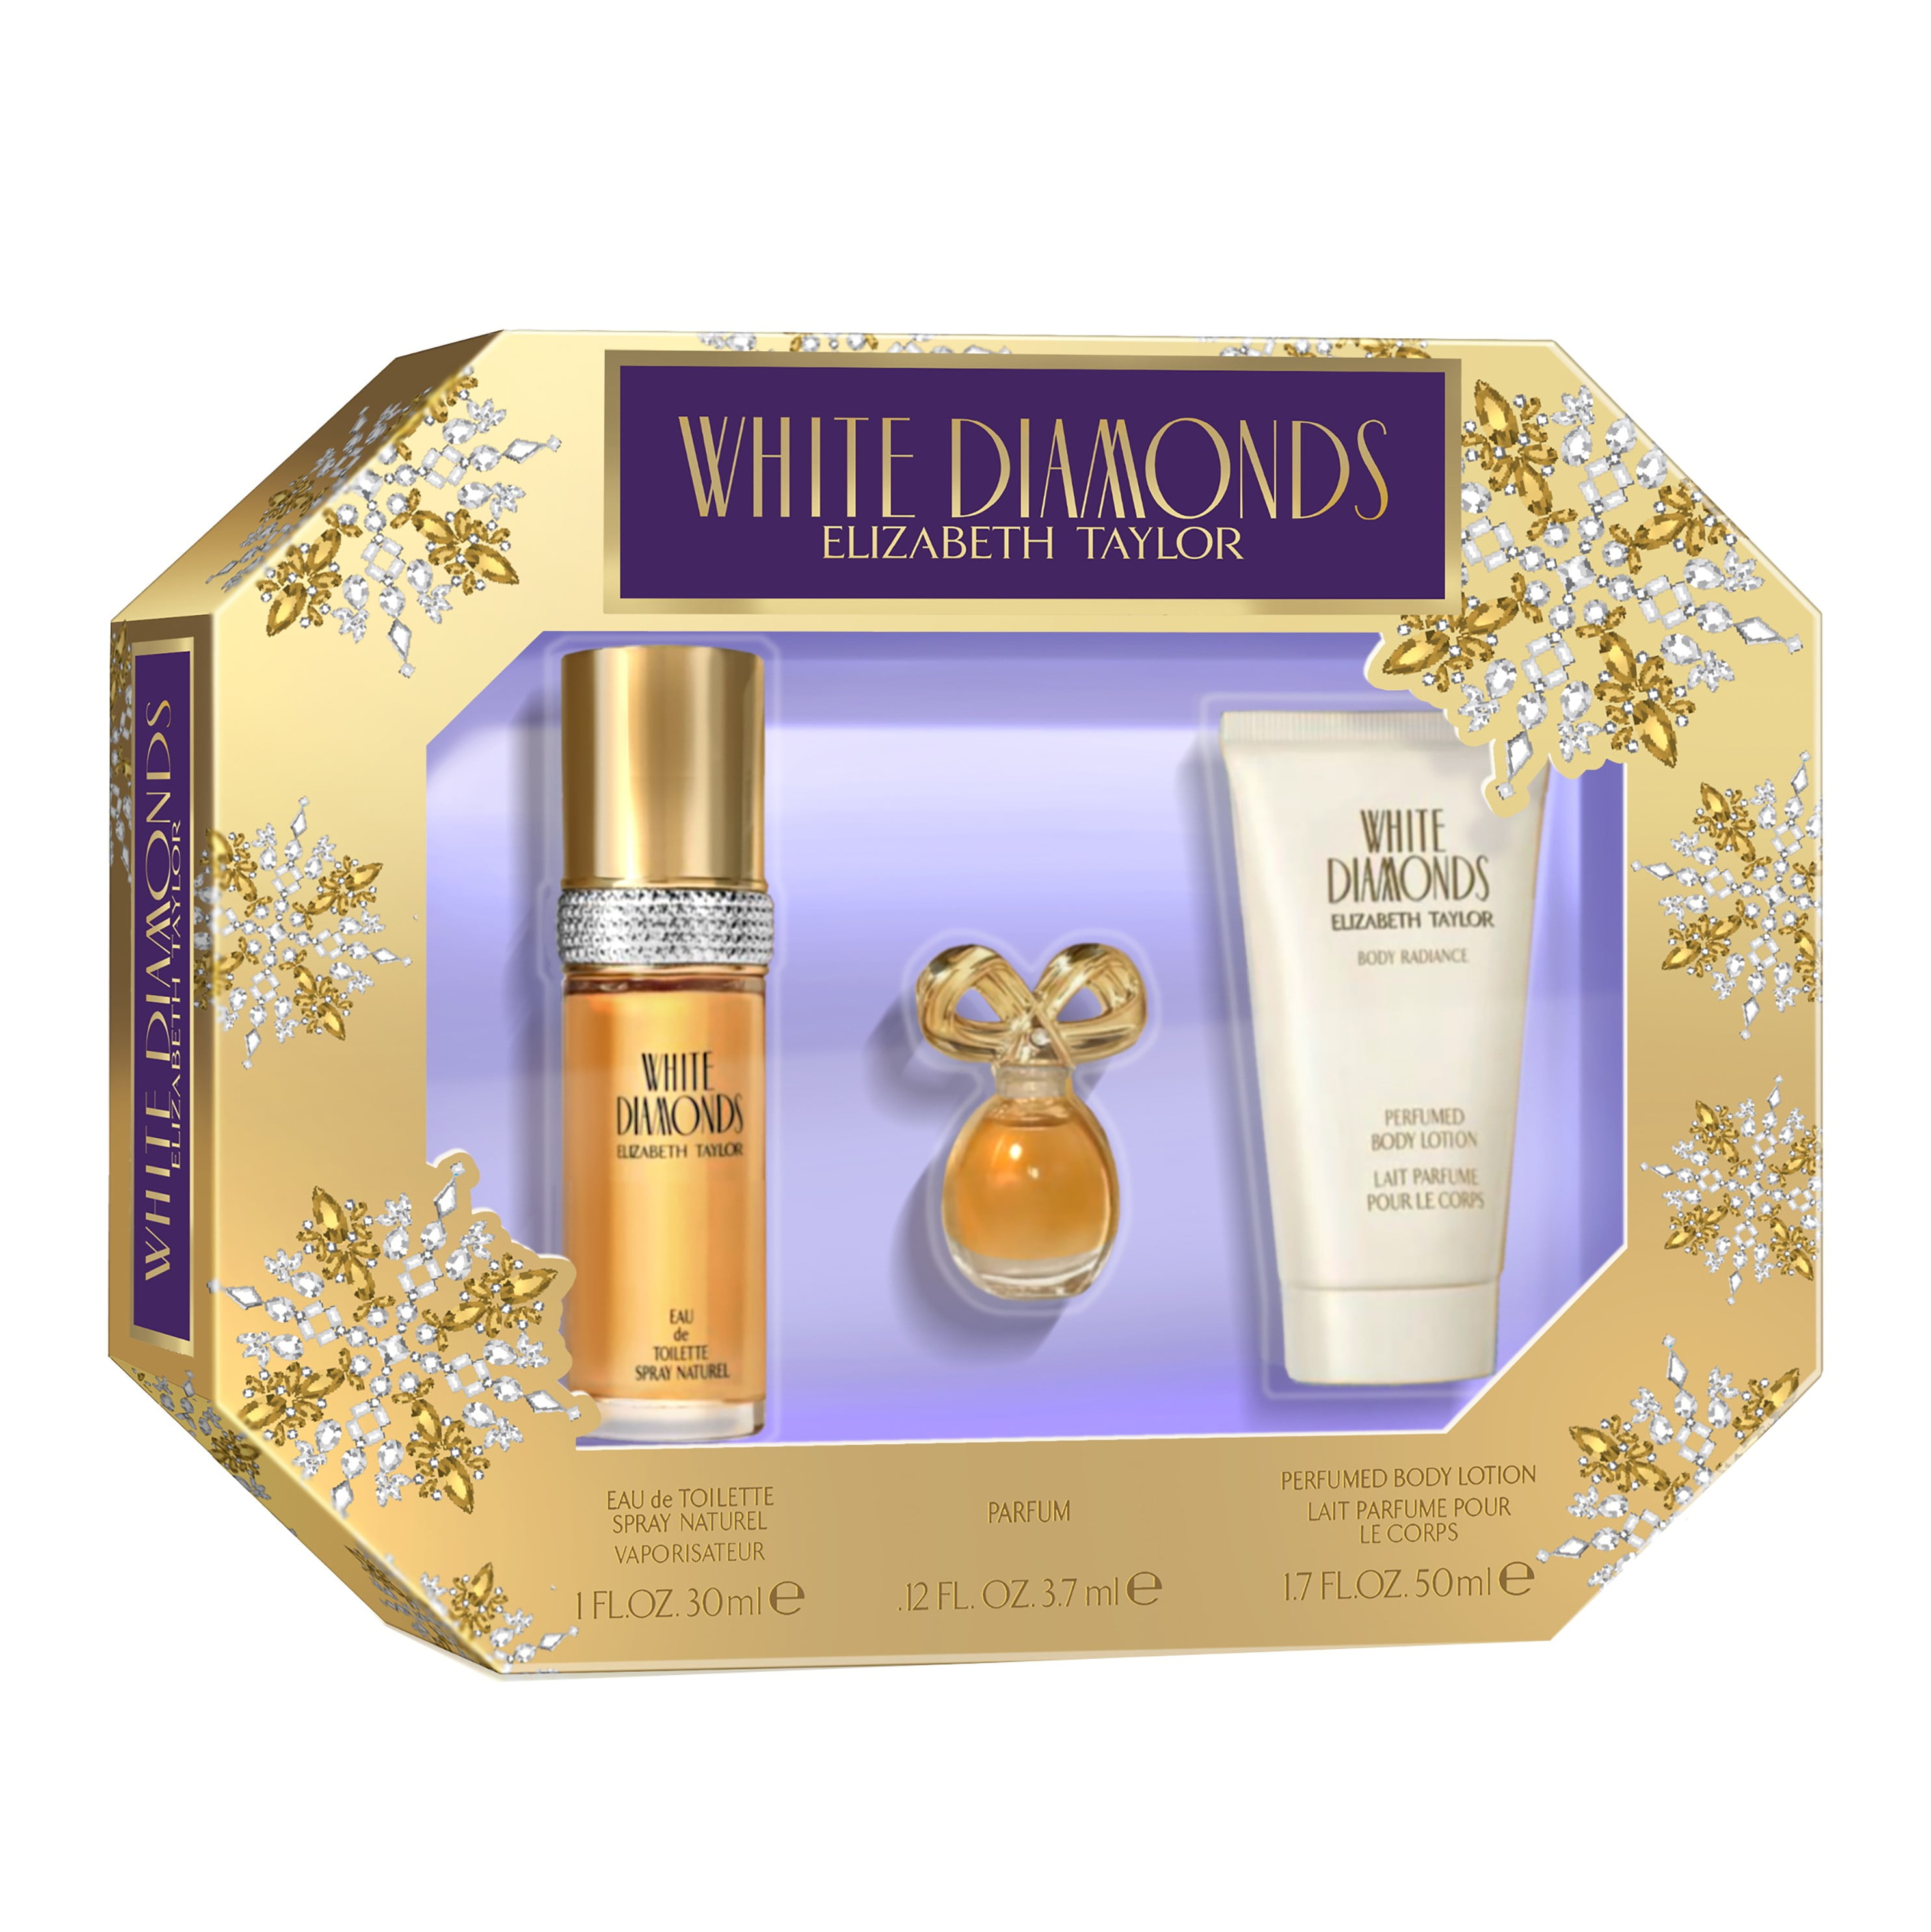 Elizabeth Taylor White Diamonds Perfume Gift Set for Women, 3 Pieces